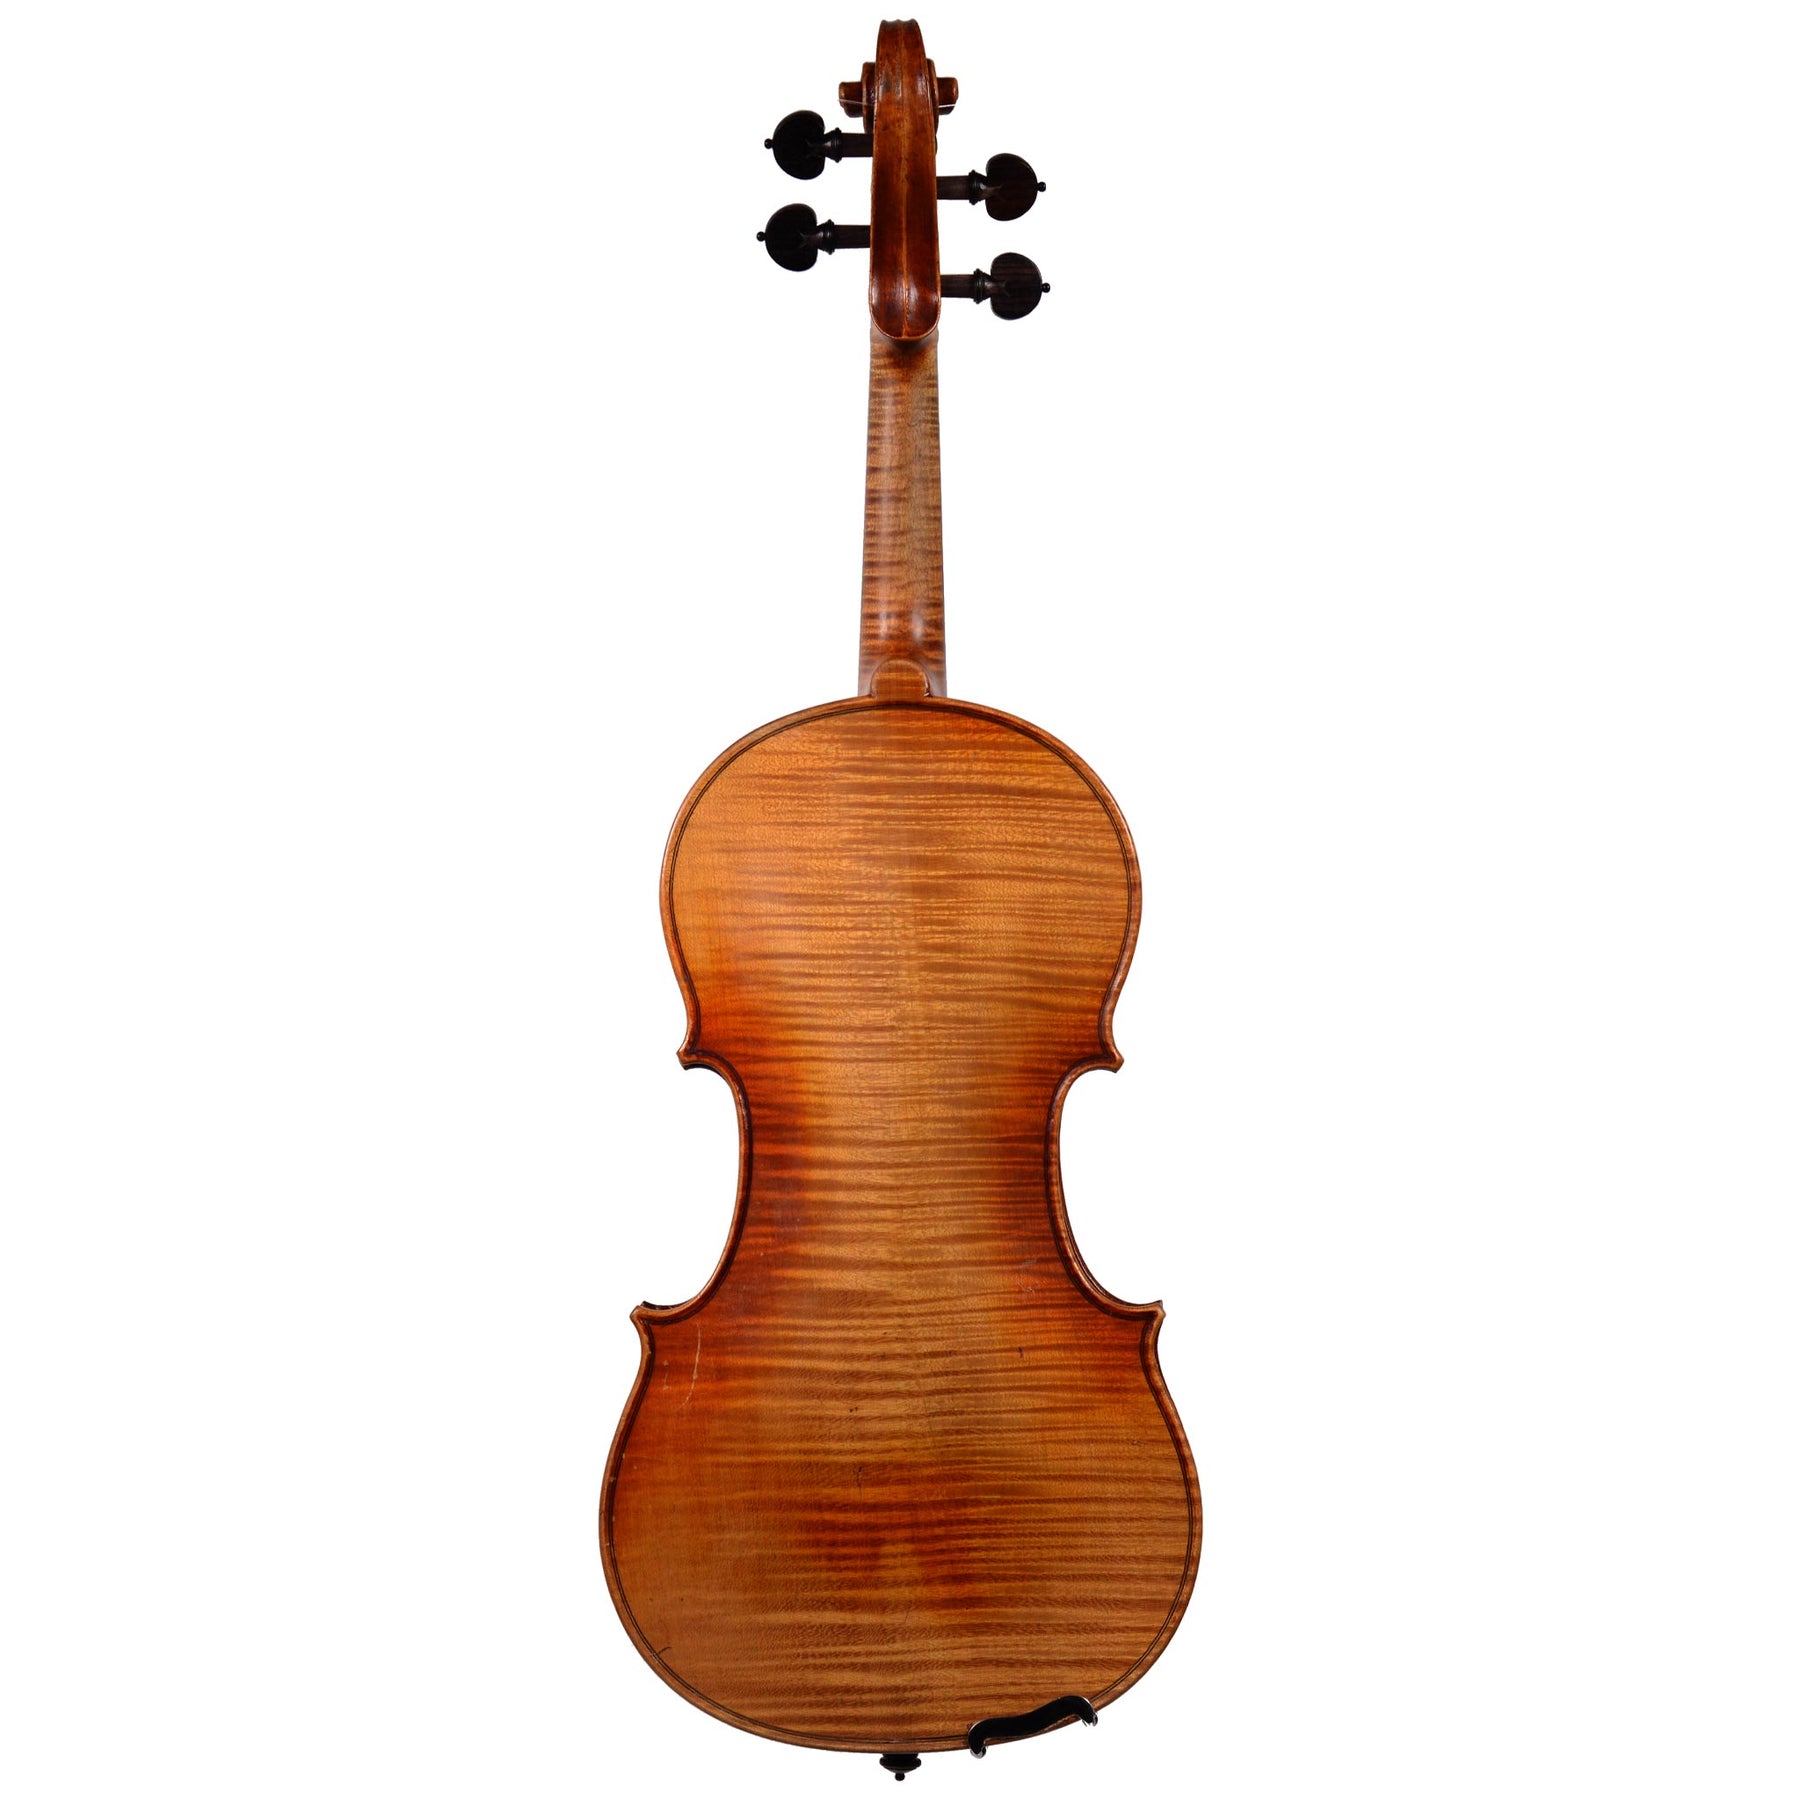 H. Albin Filcher Violin, Germany (No. 167)